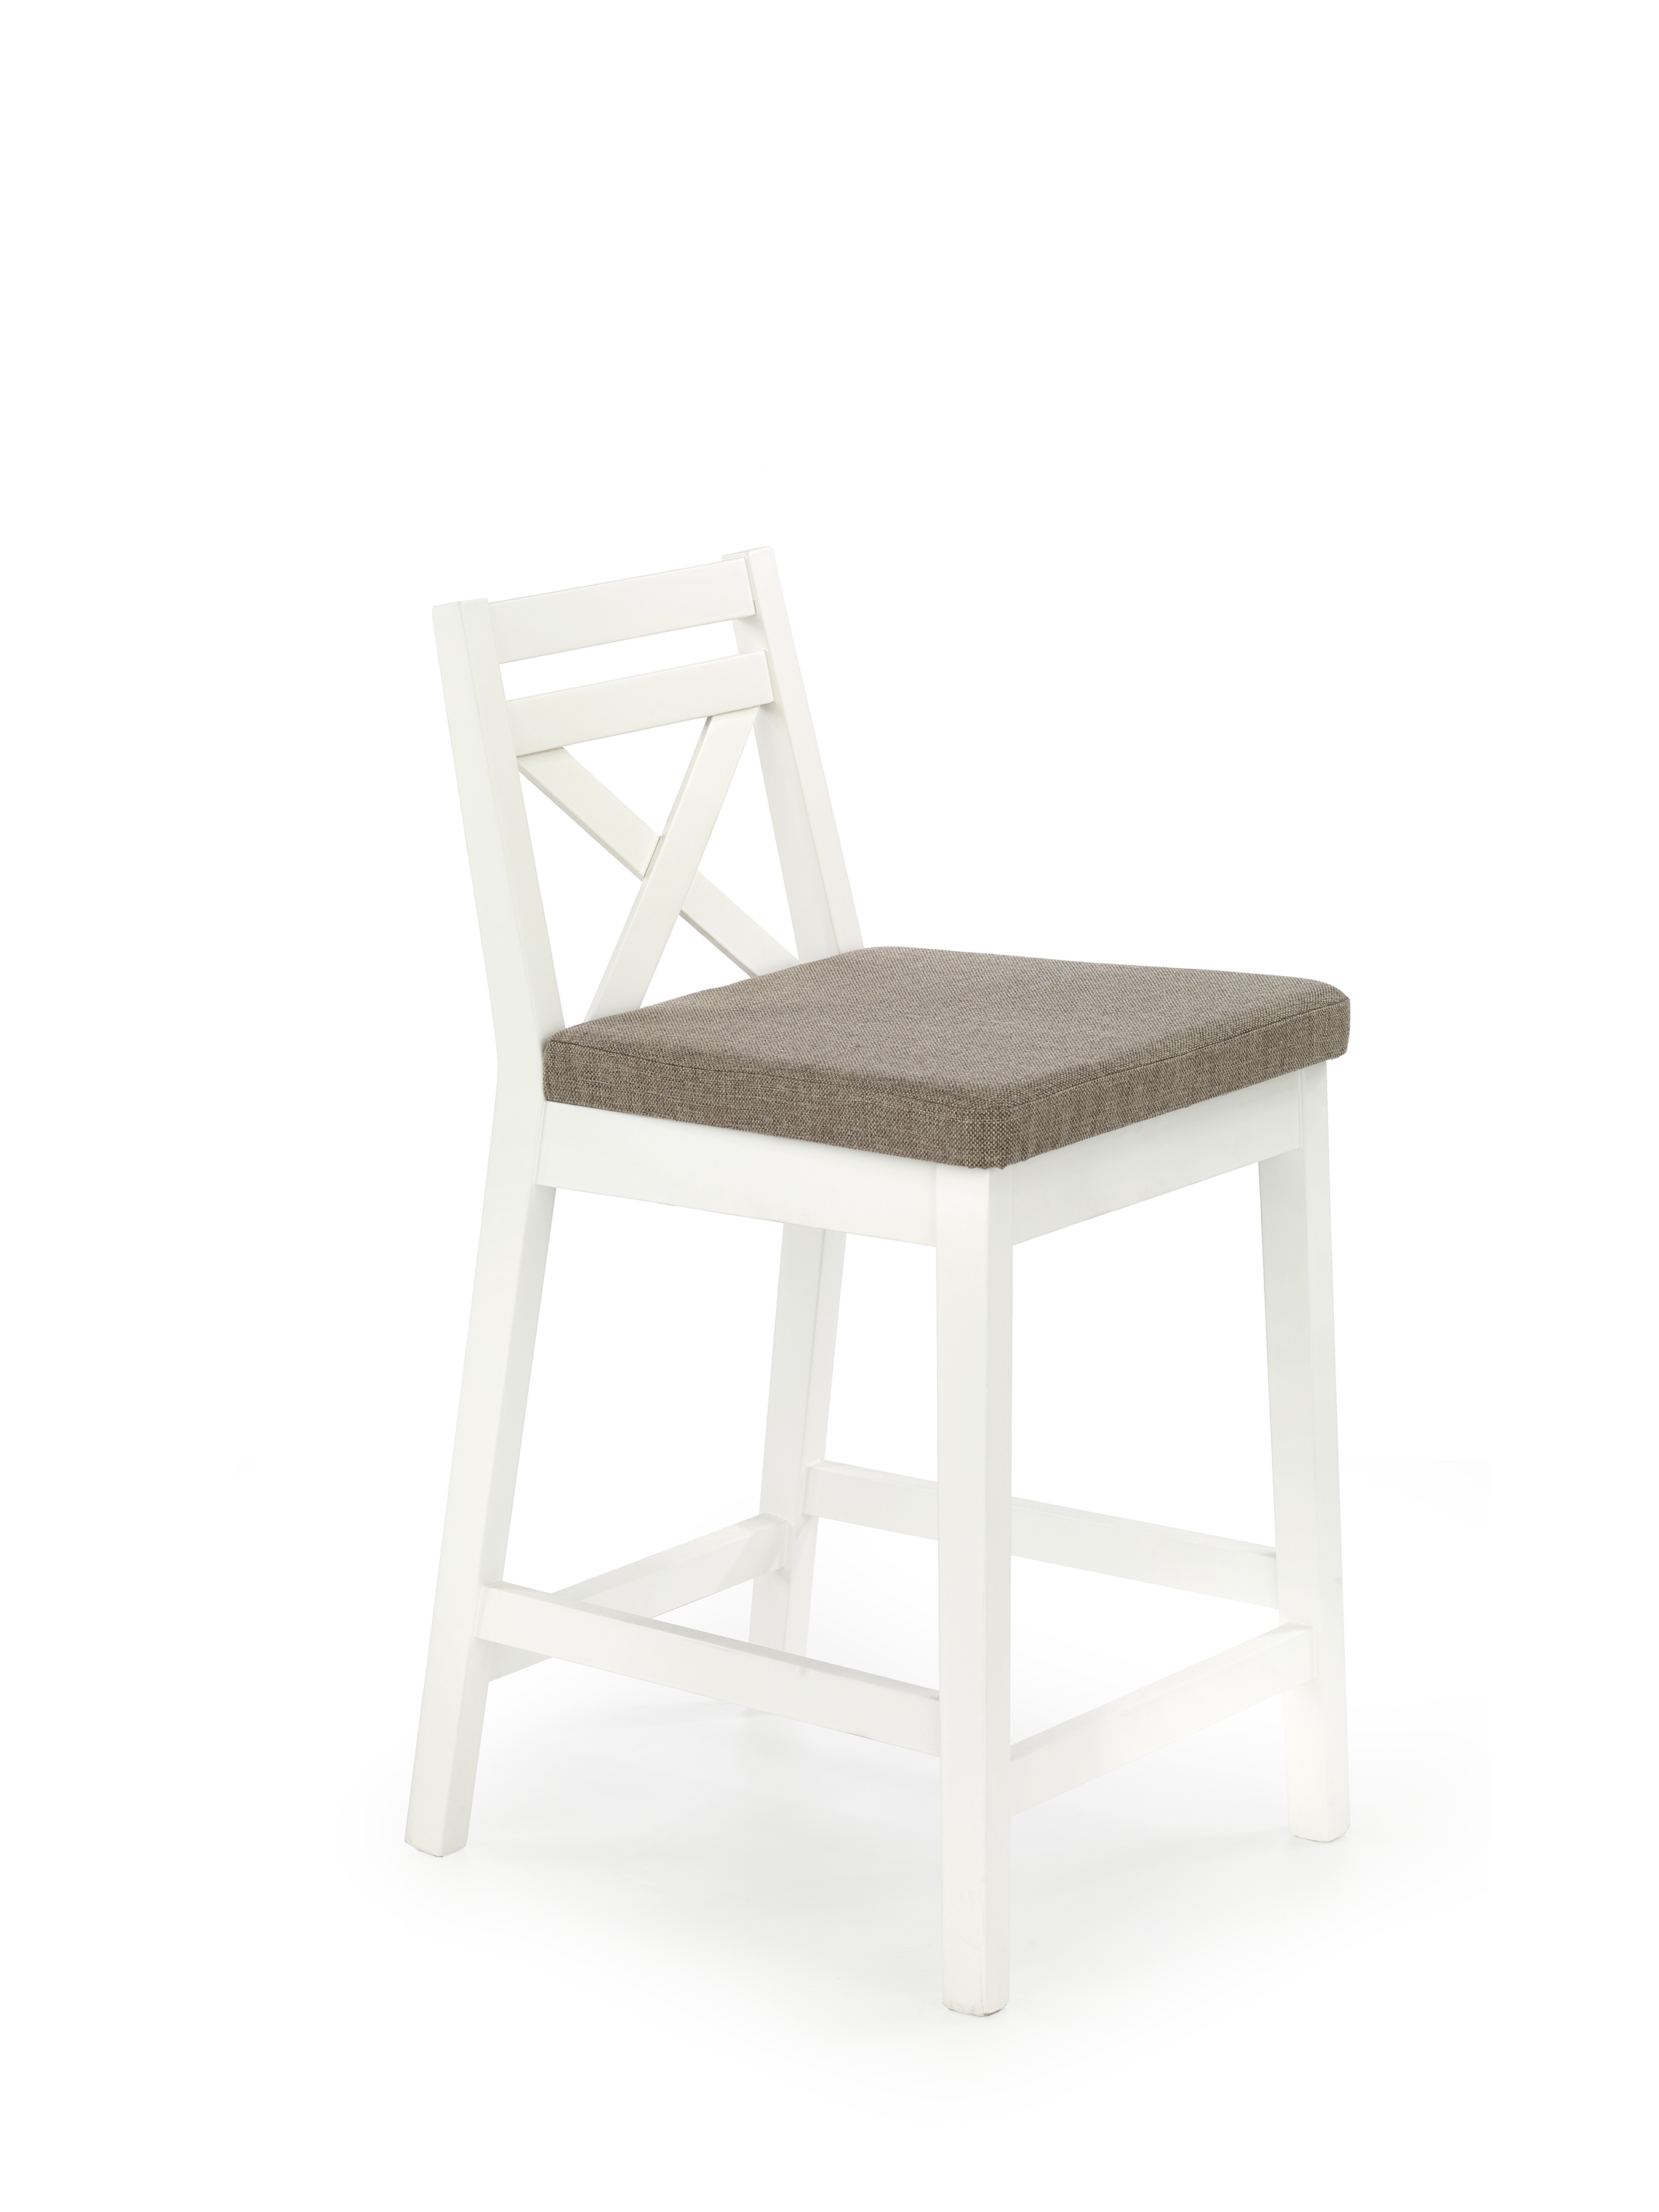 BORYS LOW krzesło barowe niskie biały / tap. Inari 23 borys low krzesło barowe niskie biały / tap. inari 23